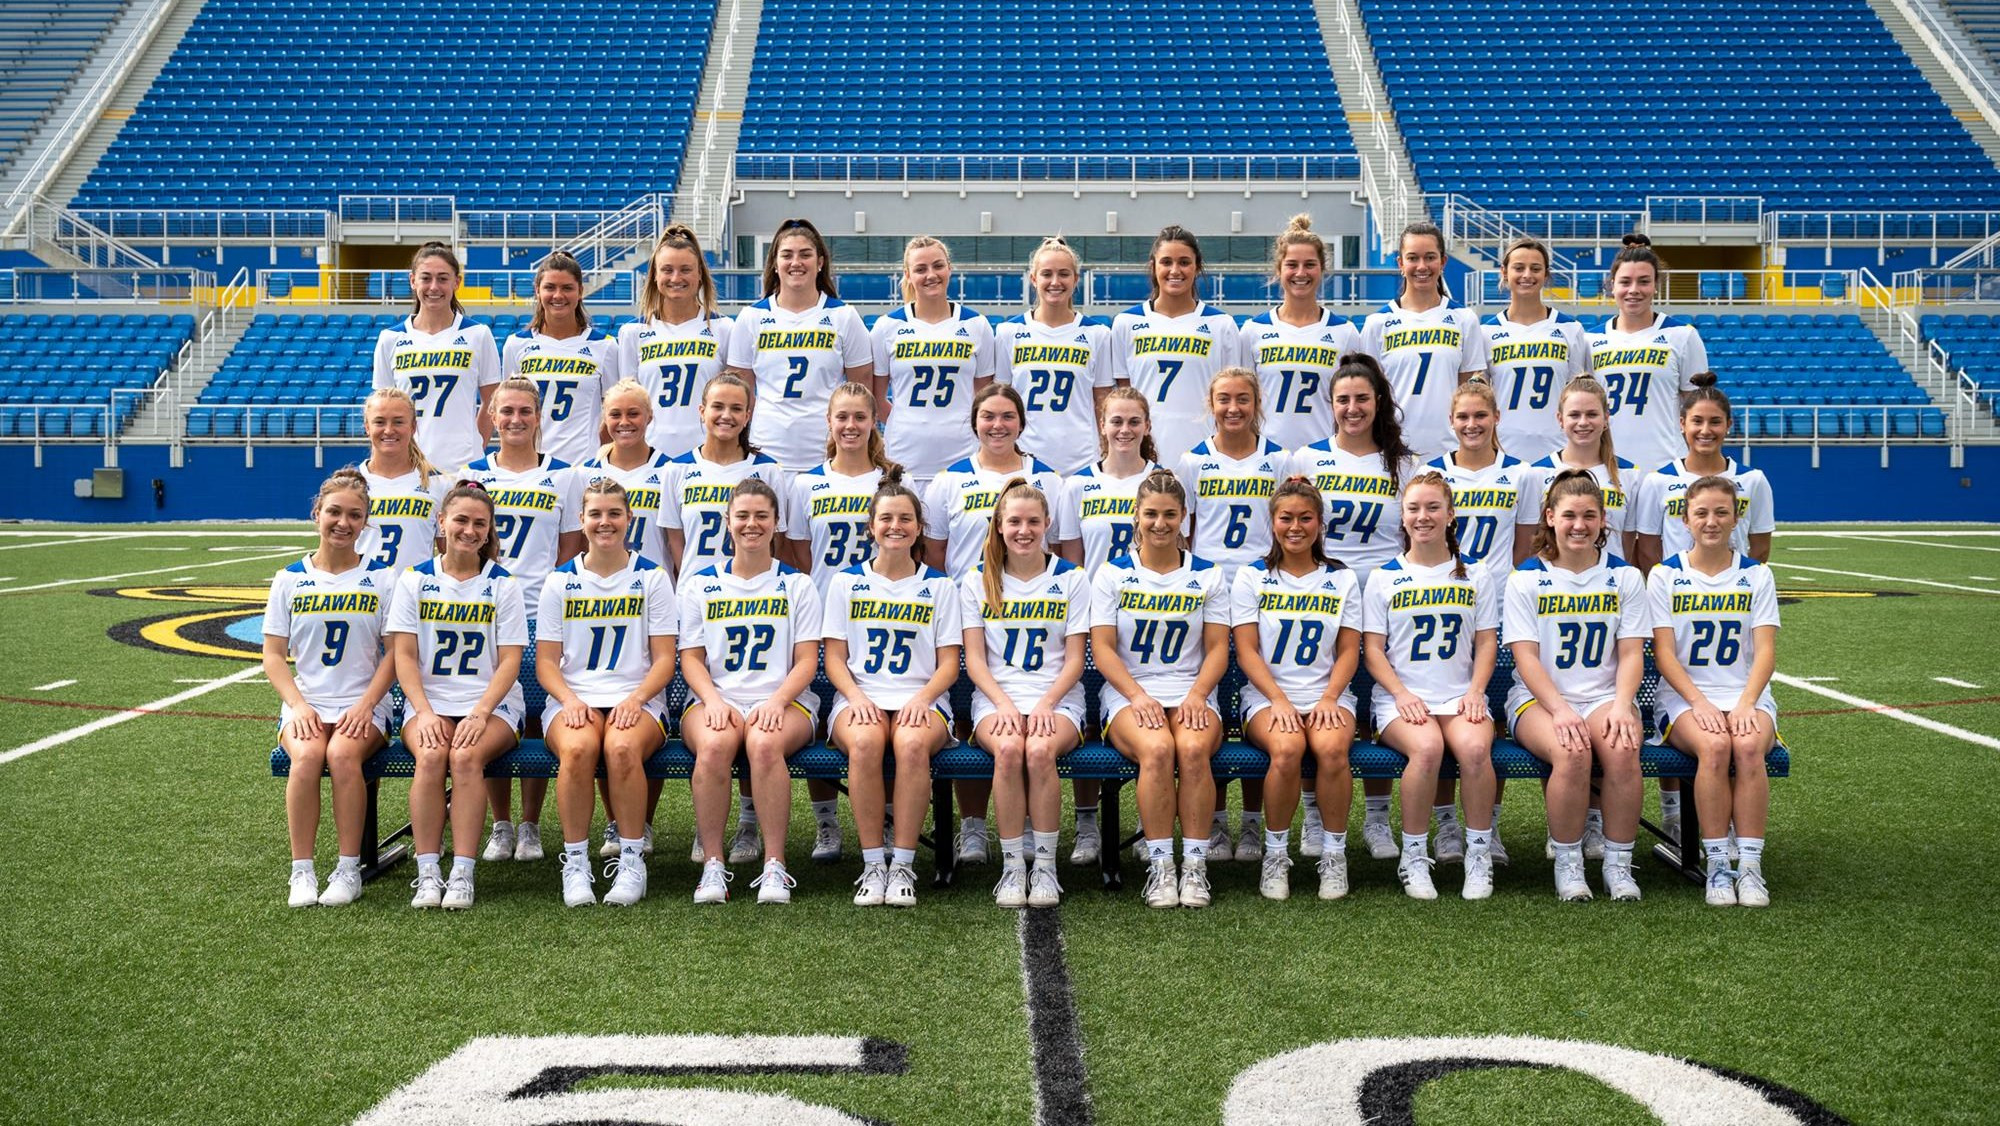 2022 Women's Lacrosse Roster - University of Delaware Athletics